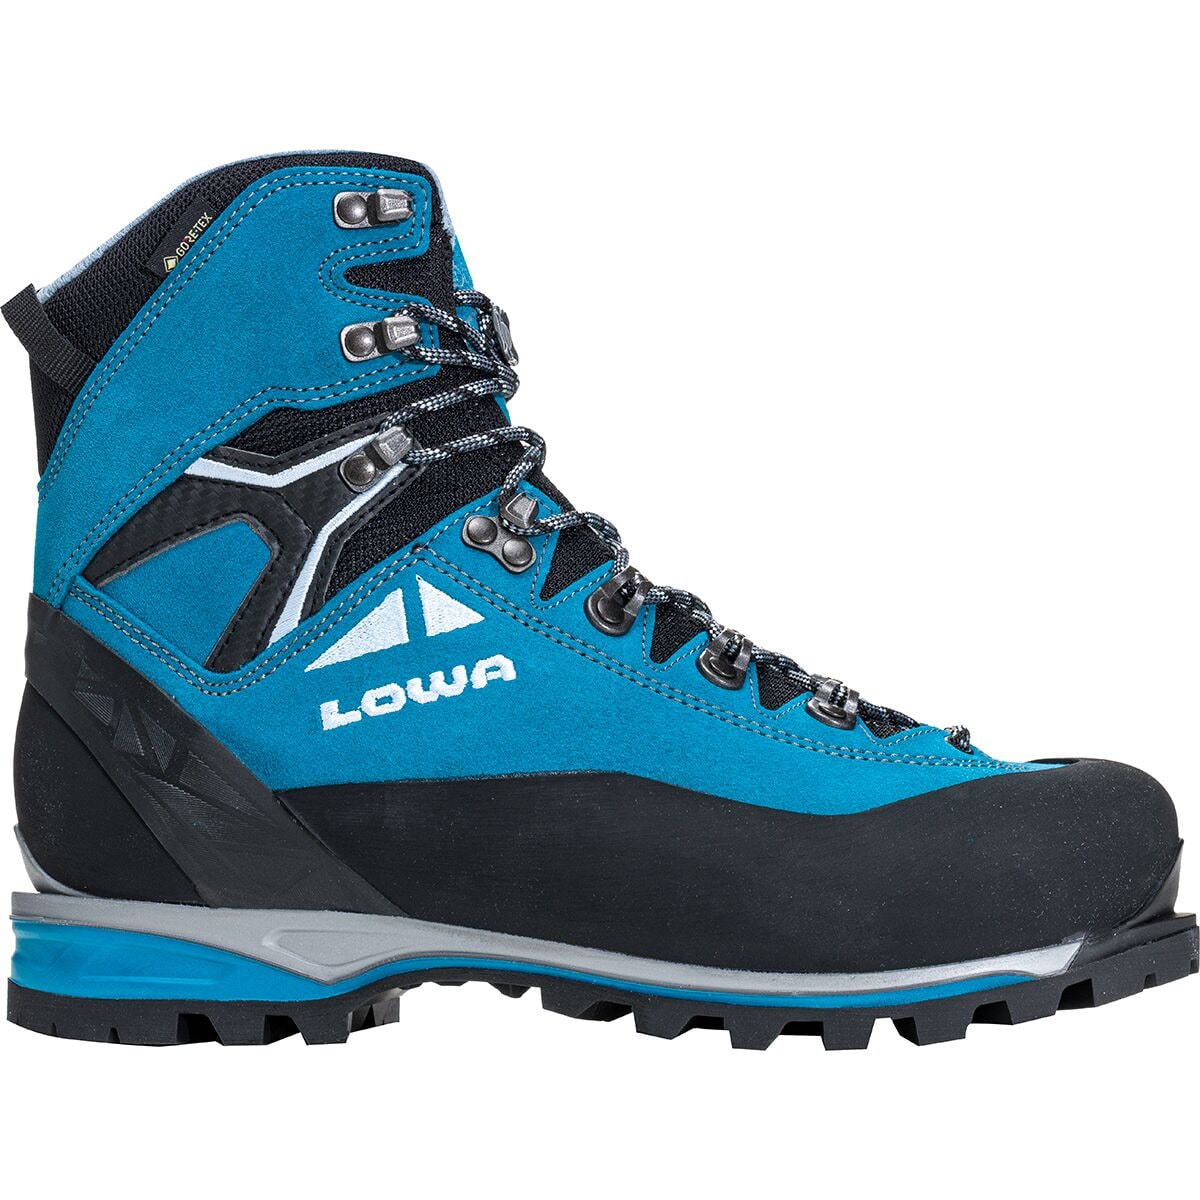 Alpine Expert II GTX Mountaineering Boot - Women